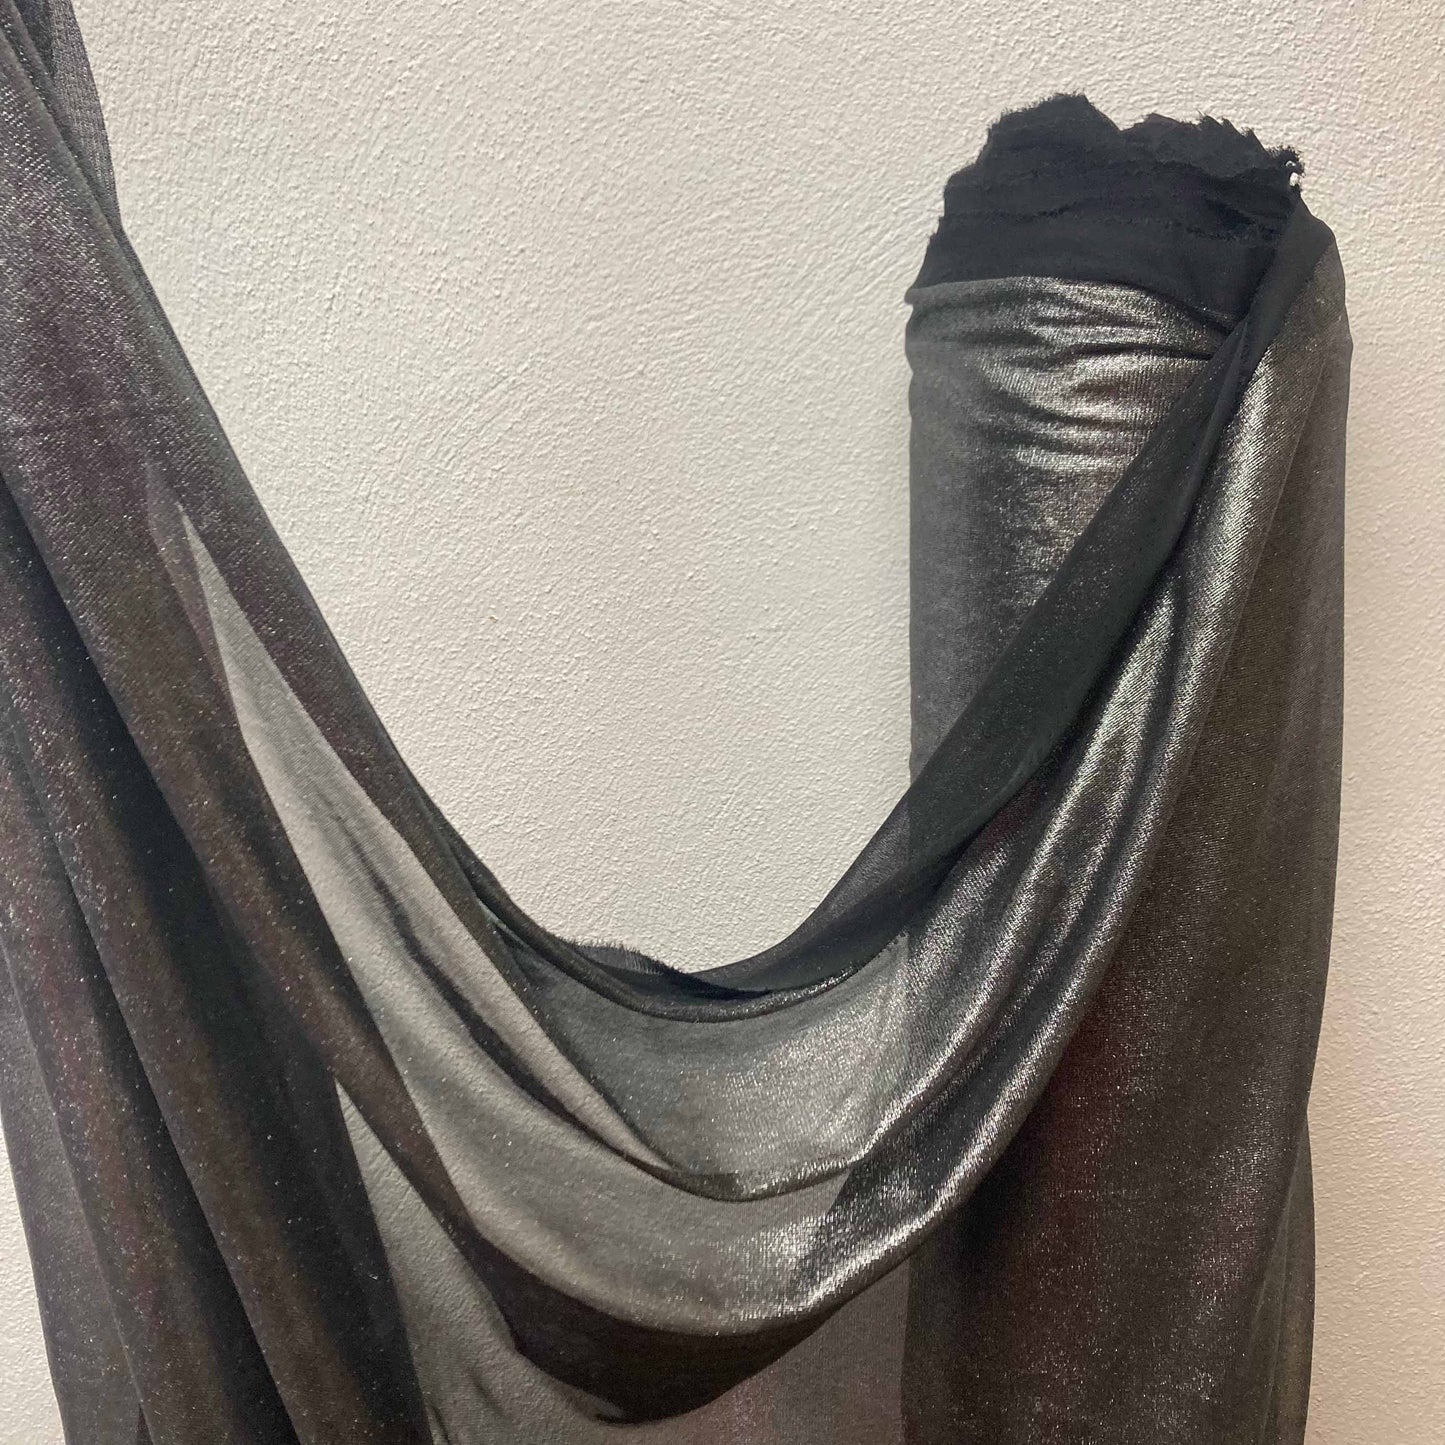 Chiffon Jersey Fabric - Silver & black